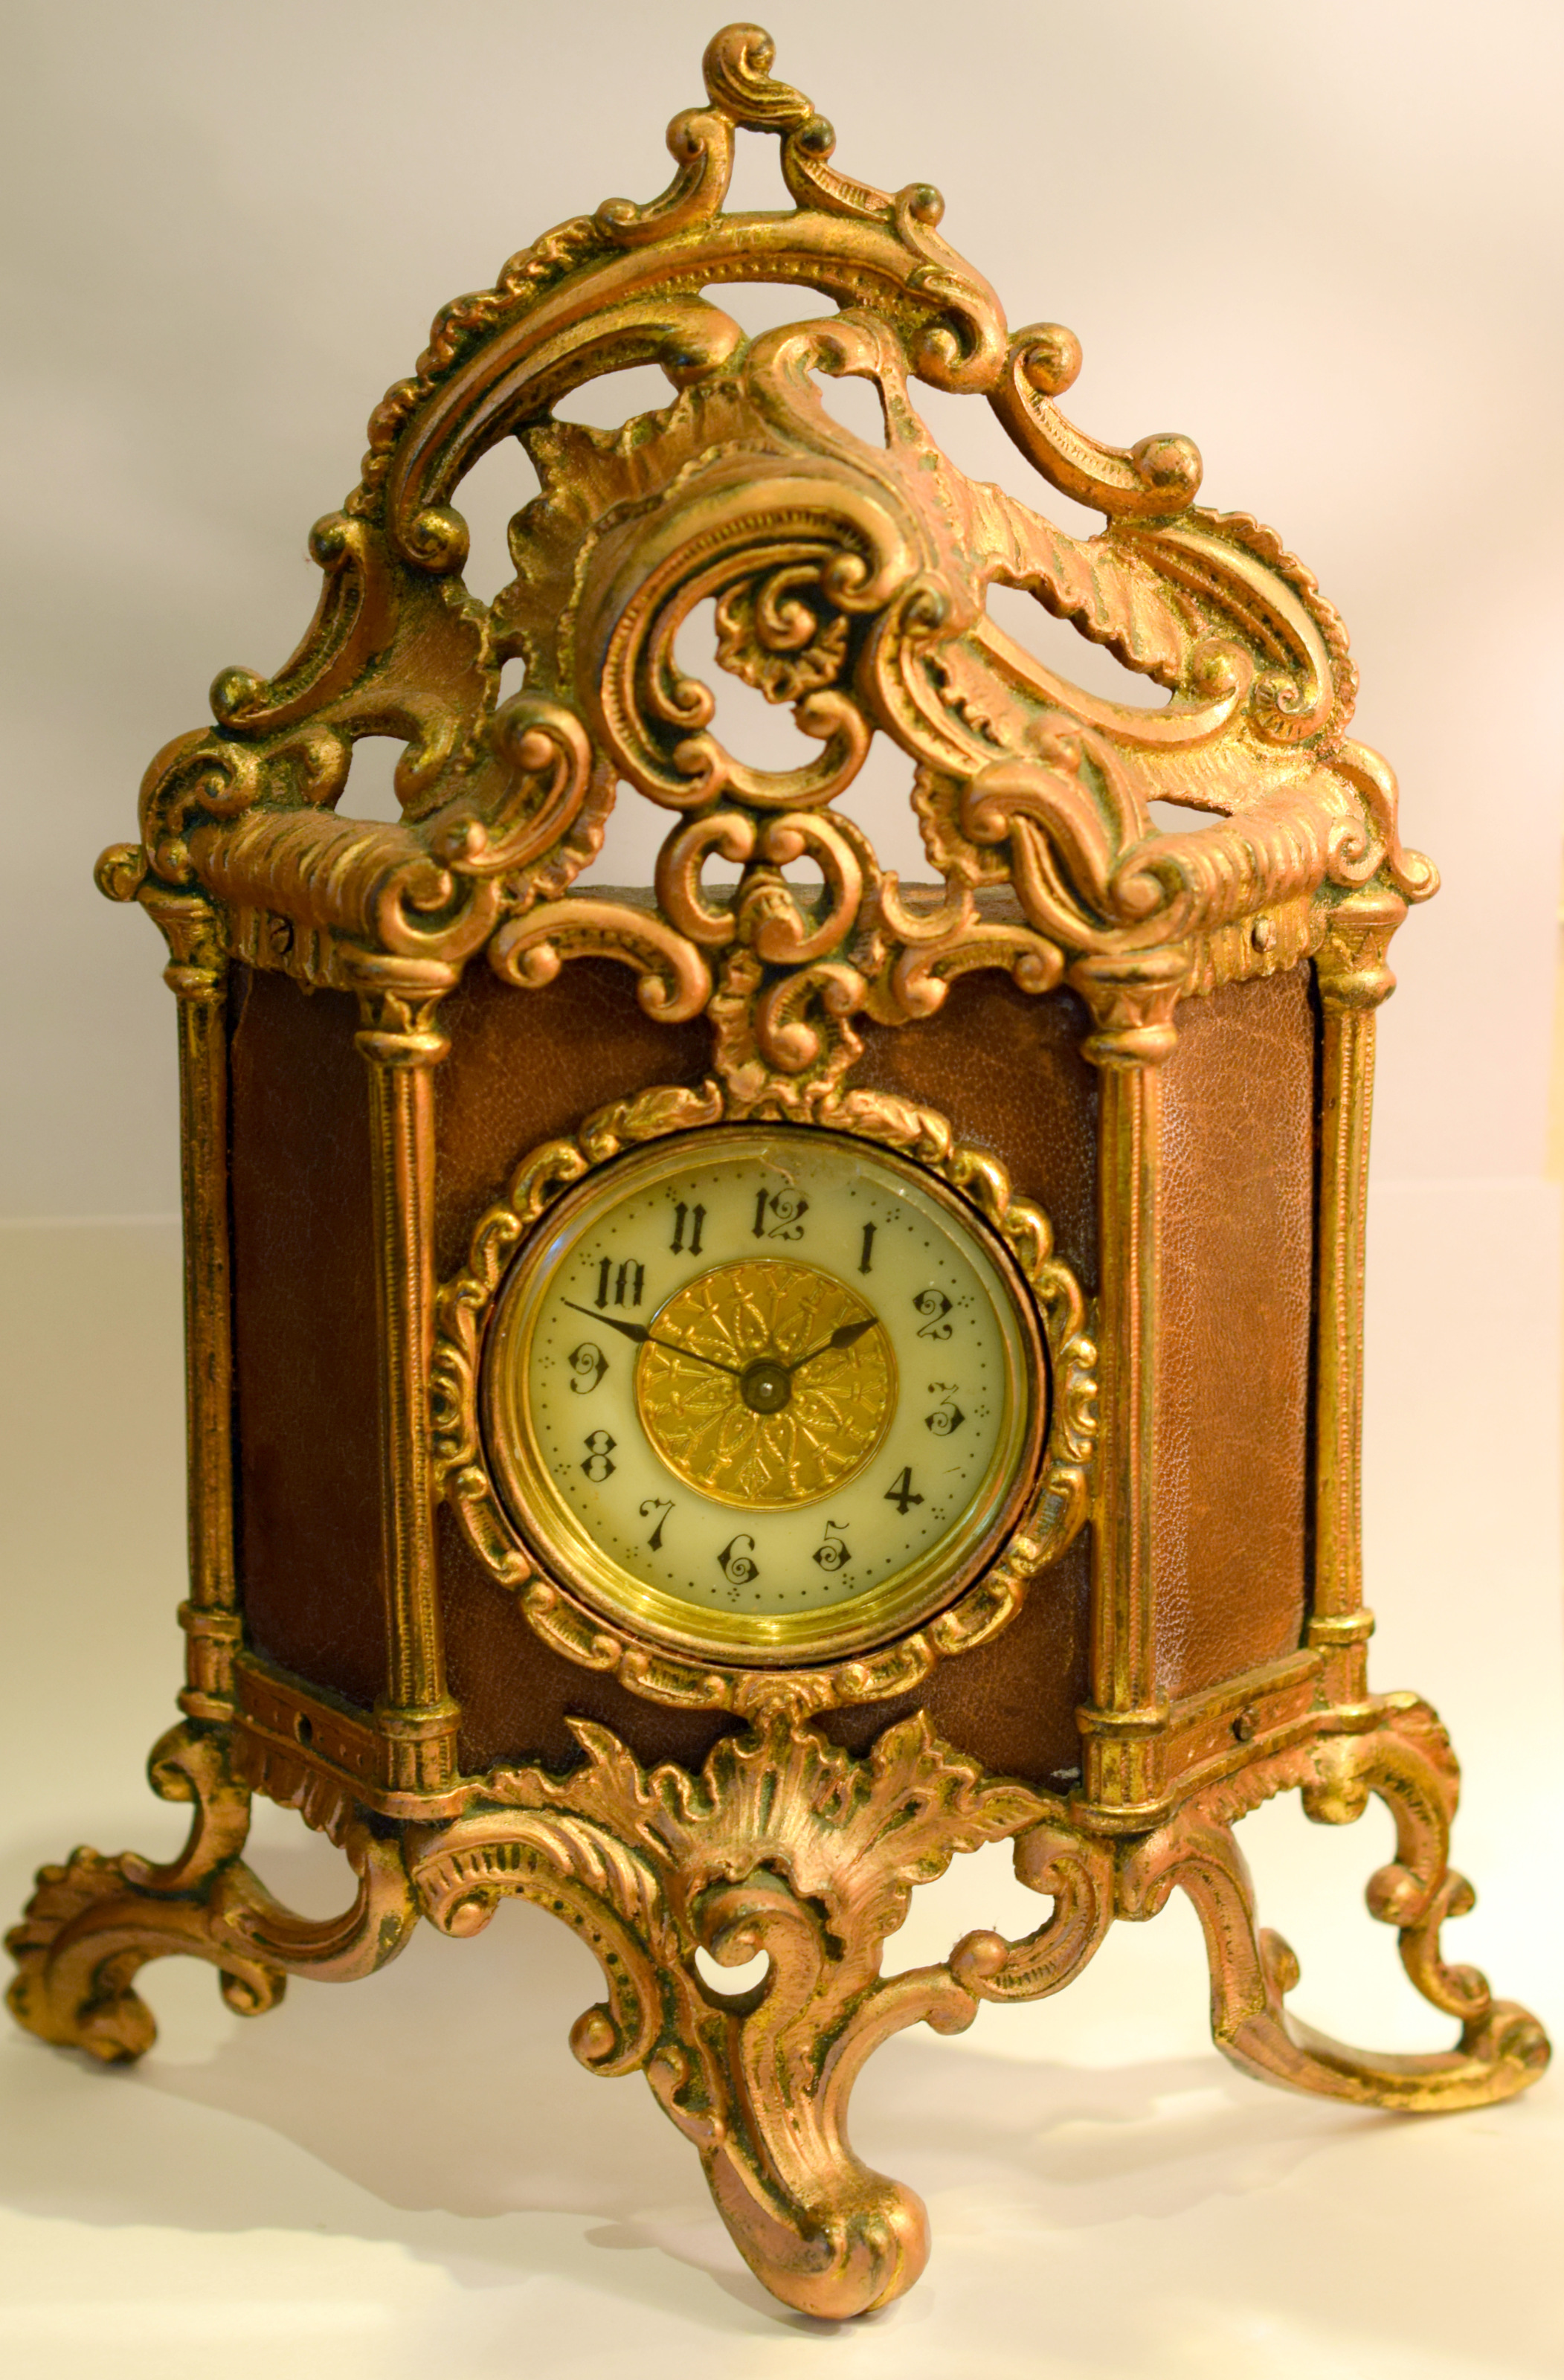 Small Rococco Style British Mantel Clock United Clock Co Birmingham